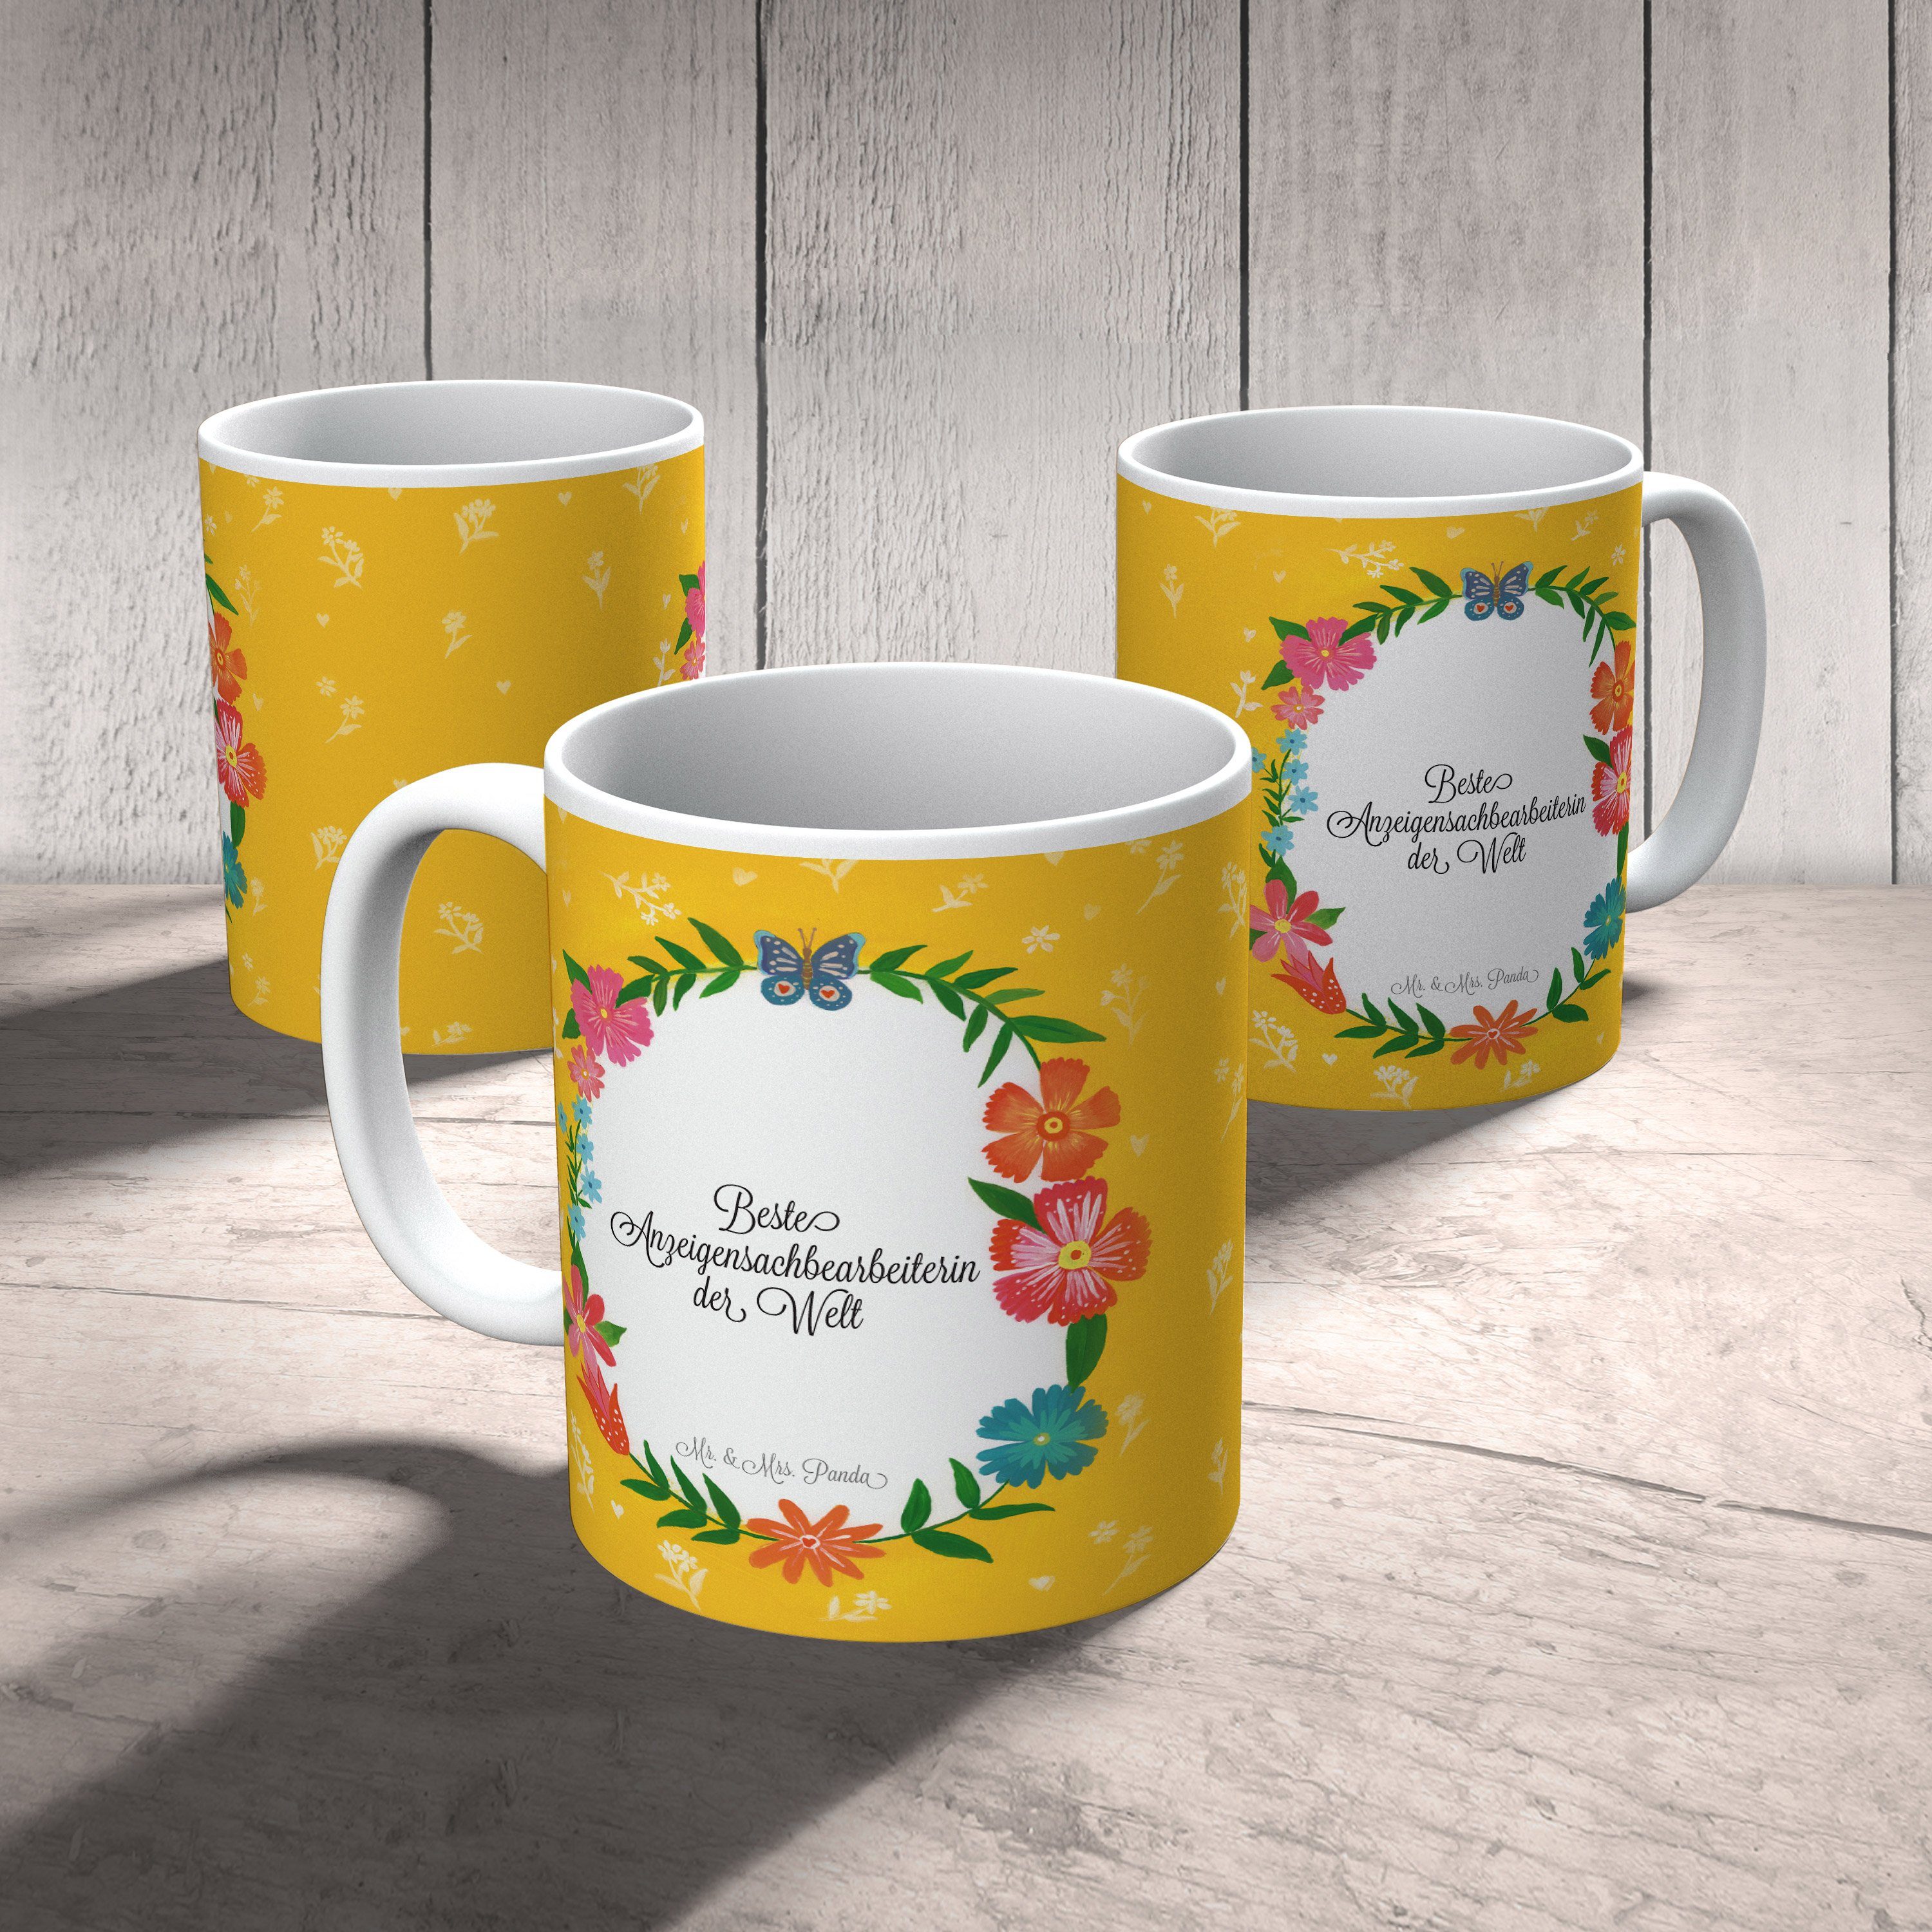 Mr. & Panda Kaffeebecher, Anzeigensachbearbeiterin Keramik Tasse Tasse, Geschenk, Mrs. Gratulation, 